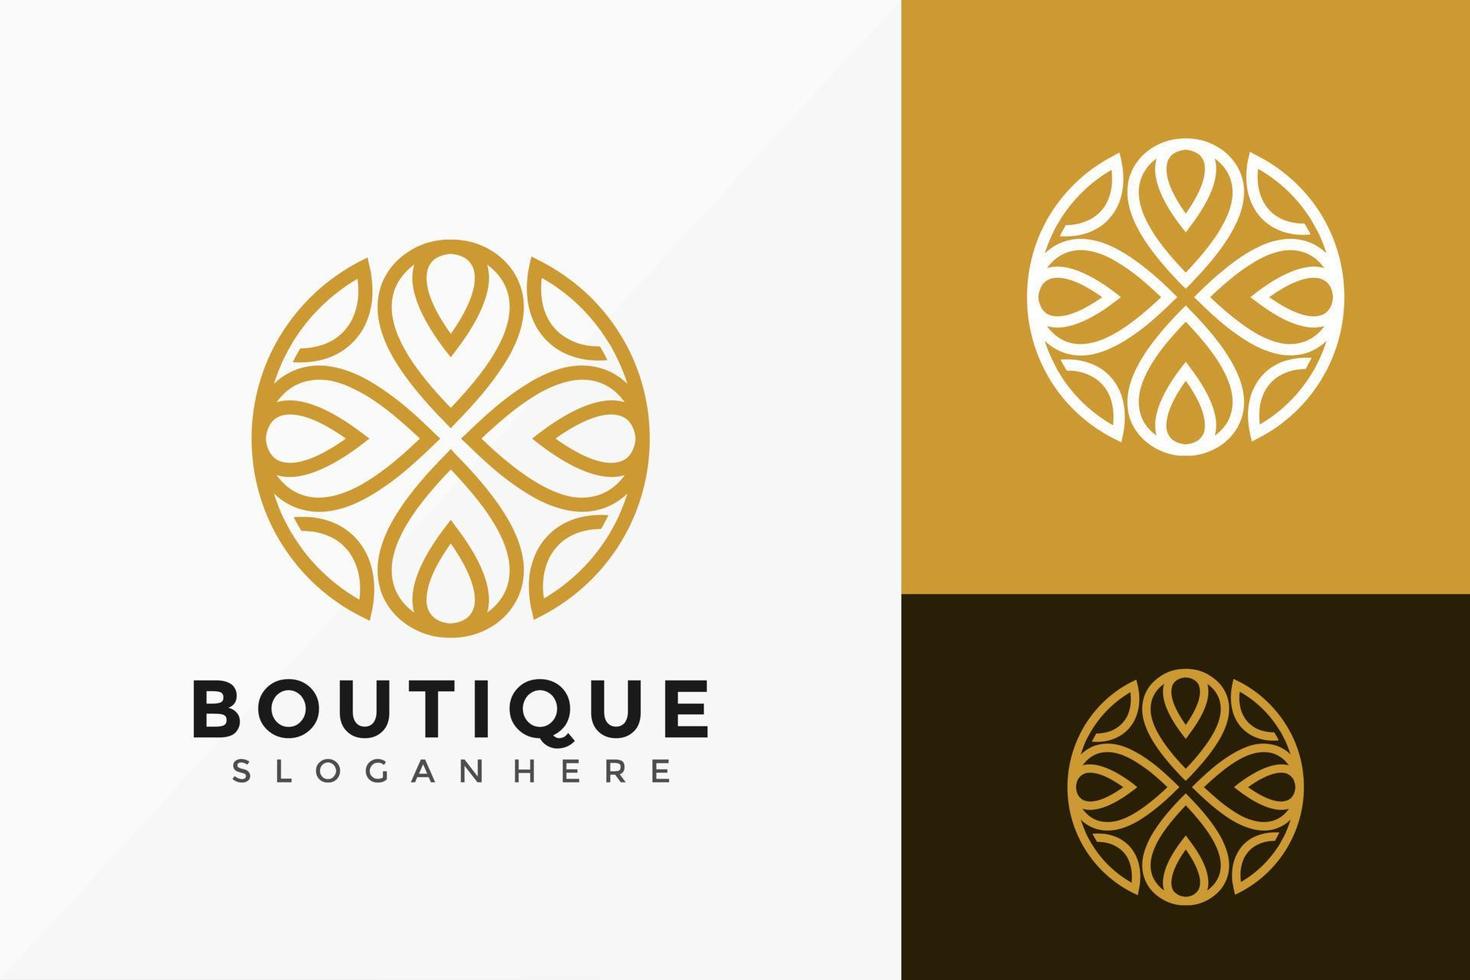 design del logo della boutique del fiore di loto, loghi creativi moderni progetta il modello dell'illustrazione di vettore